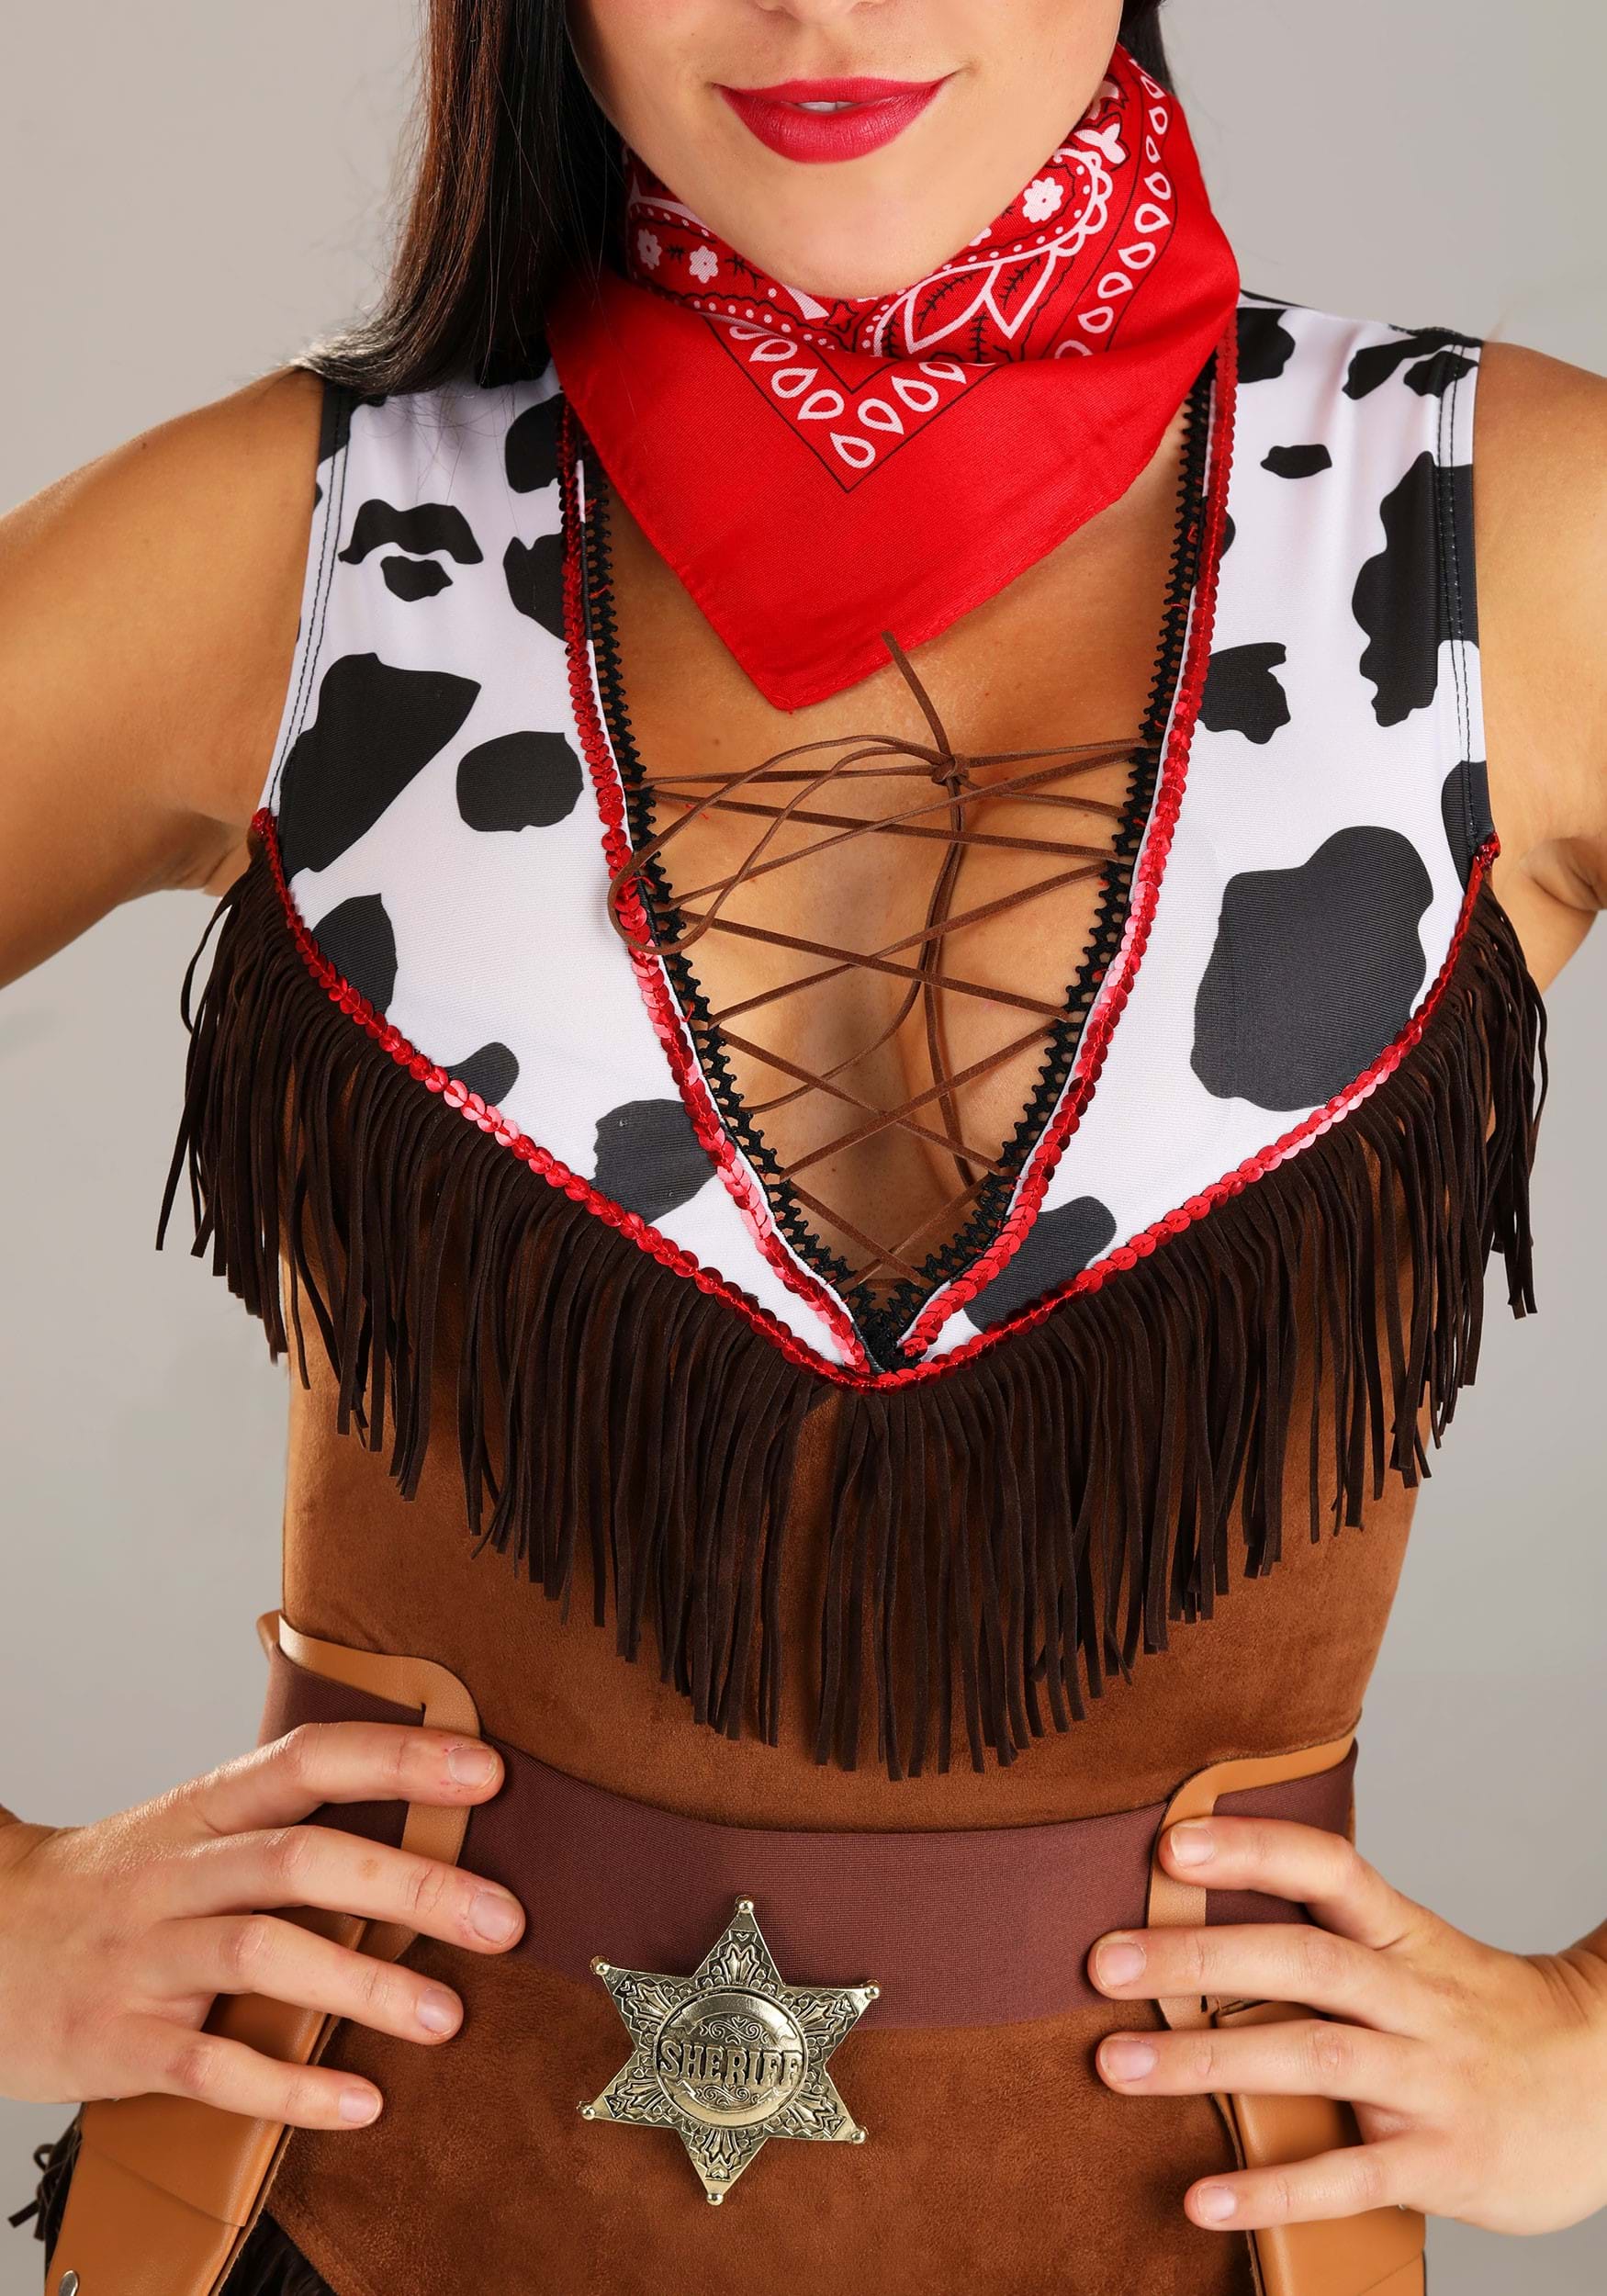 Wild West Hottie Costume For Women